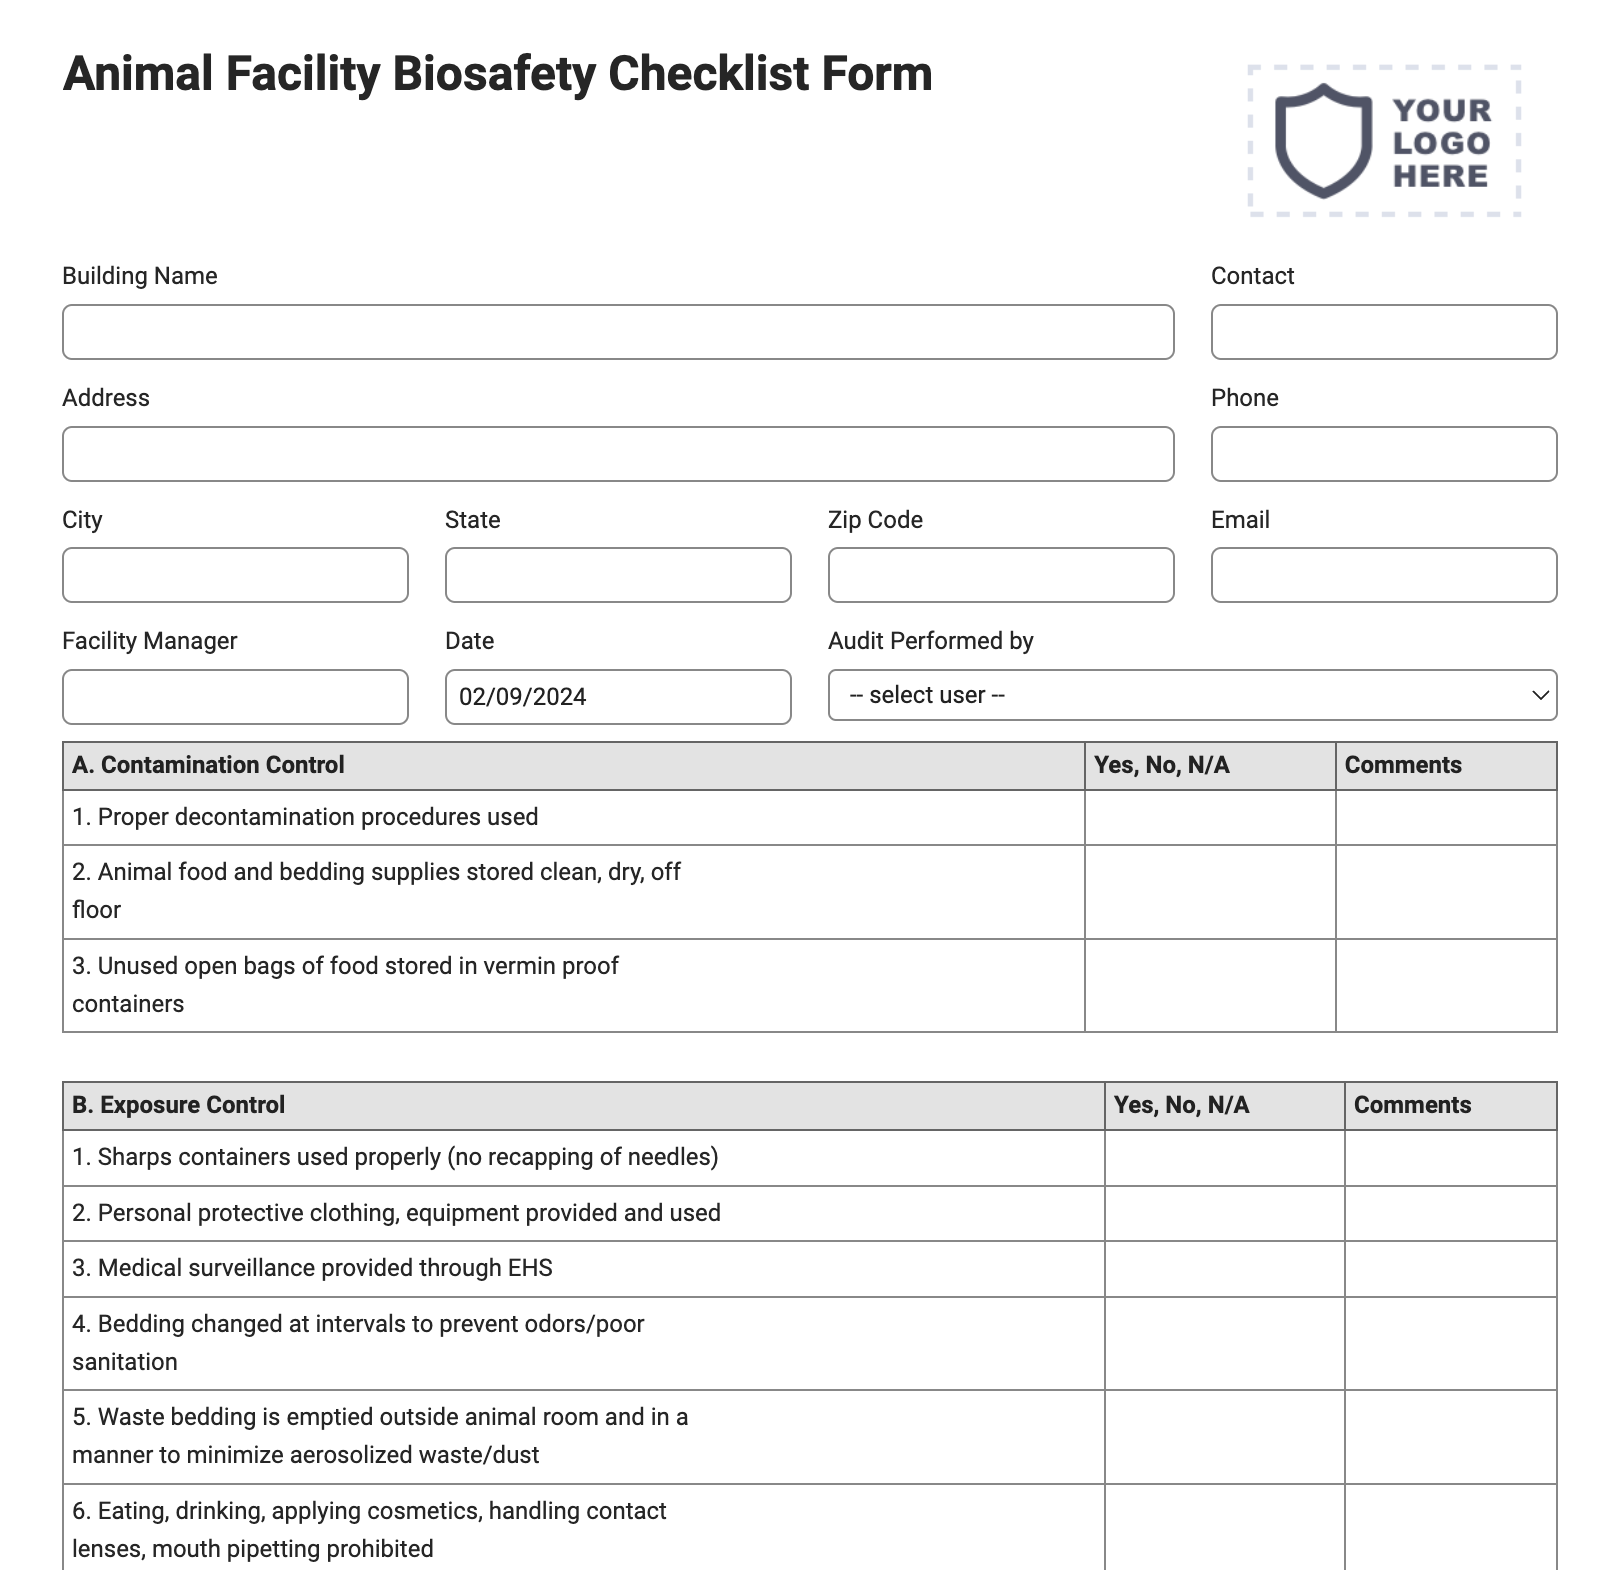 Animal Facility Biosafety Checklist Form